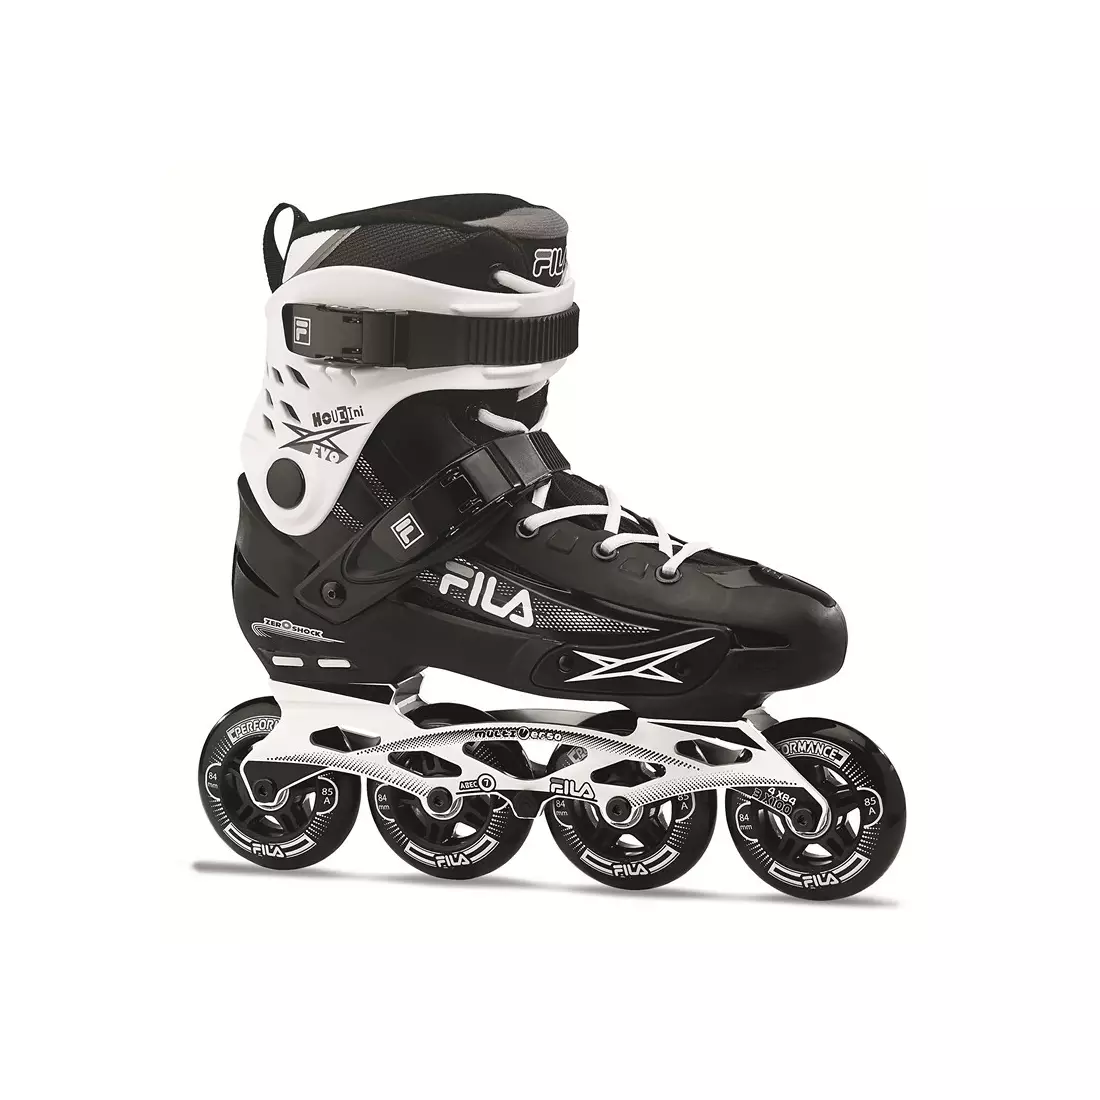 FILA SKATES men's inline skates HOUDINI EVO black/white, 10619083405